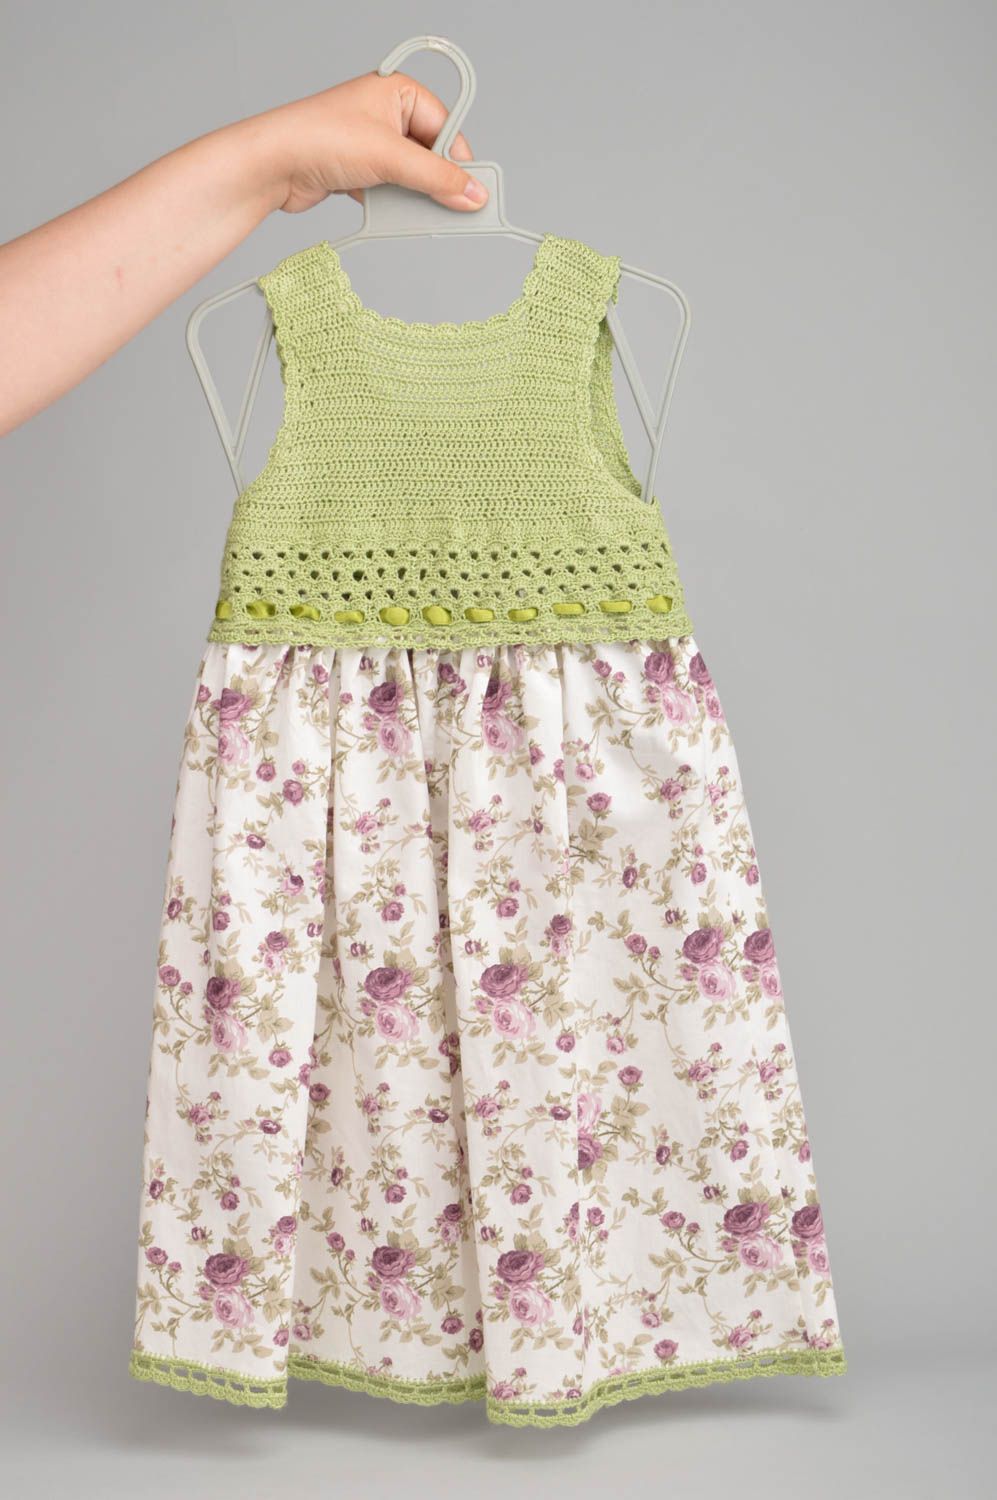 Платье вязаное крючком из акриловых ниток и хлопка цветочное детское хэнд мэйд фото 2